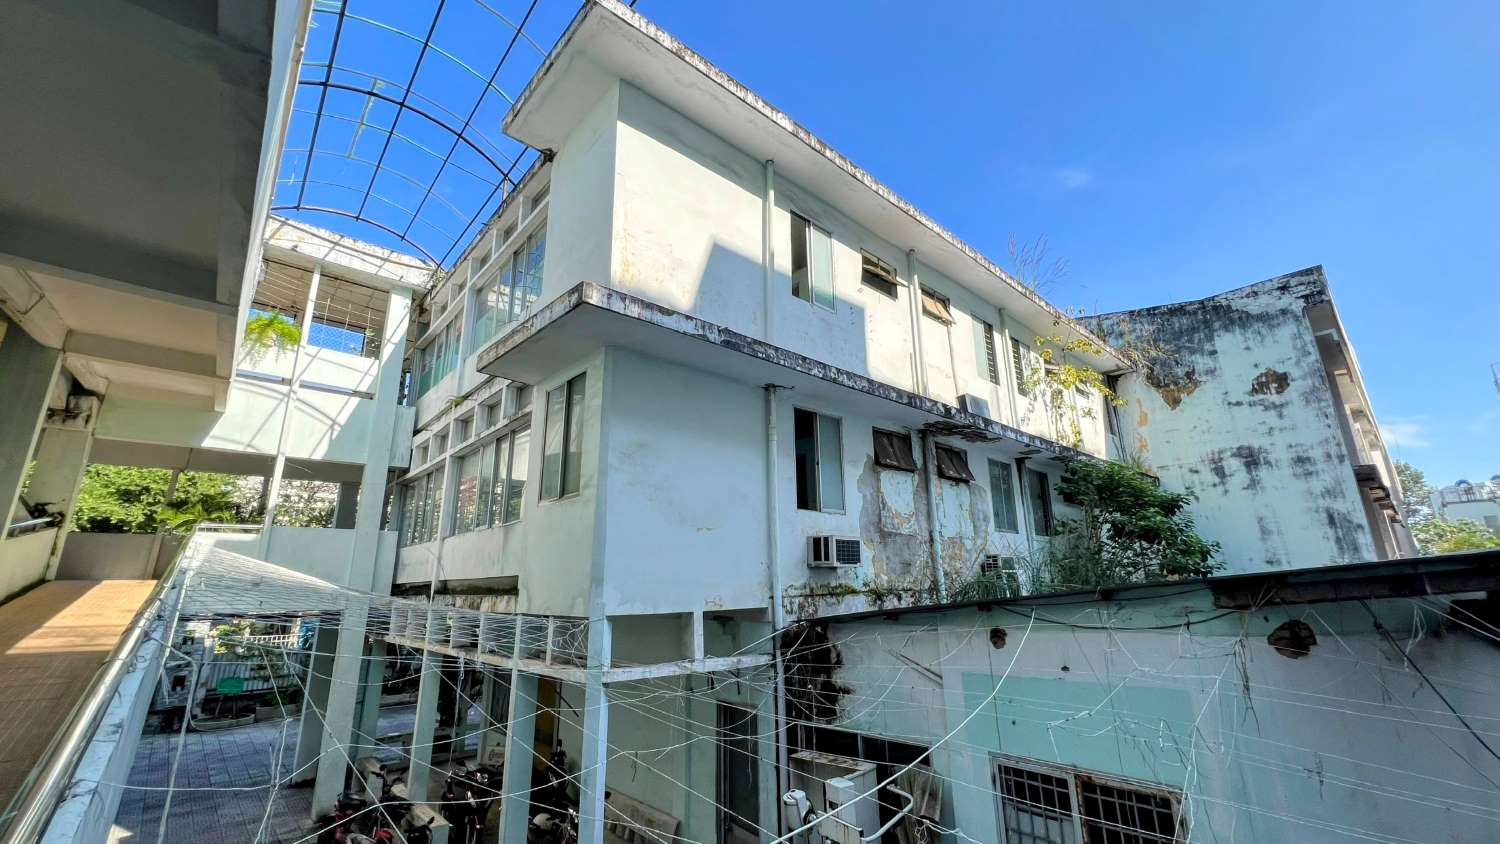 Khu A, Trung tâm y tế quận Gò Vấp phải tạm thời đóng cửa không tổ chức khám chữa bệnh do cơ sở vật chất xuống cấp nghiêm trọng  